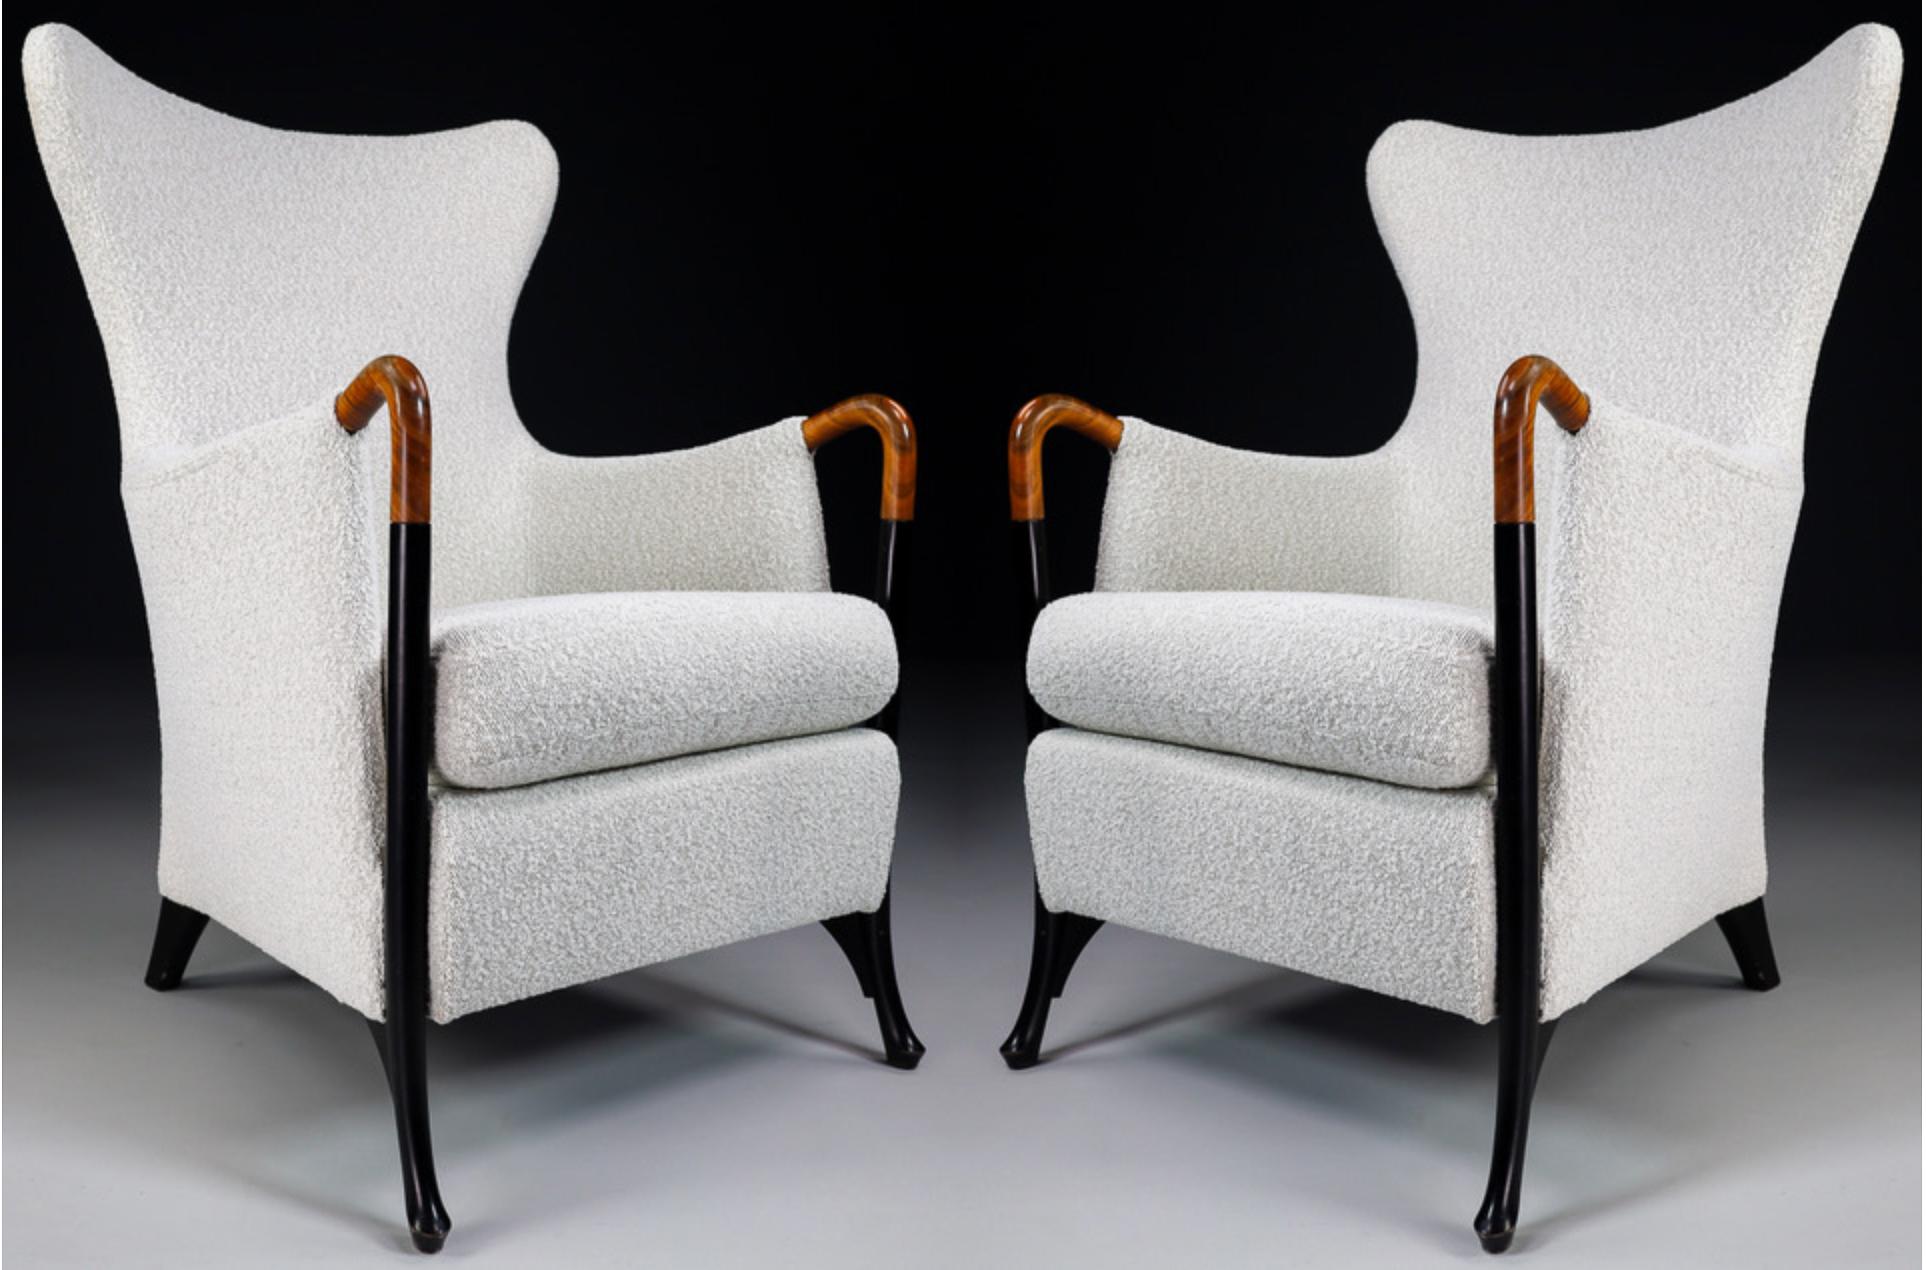 Paire de deux chaises à oreilles / fauteuils modernes Progetti par Umberto Asnago pour Giorgetti en nouveau tissu de laine bouclé. Chaise élégante et très confortable et élégants pieds en bois courbés. La structure est en très bon état. Ces